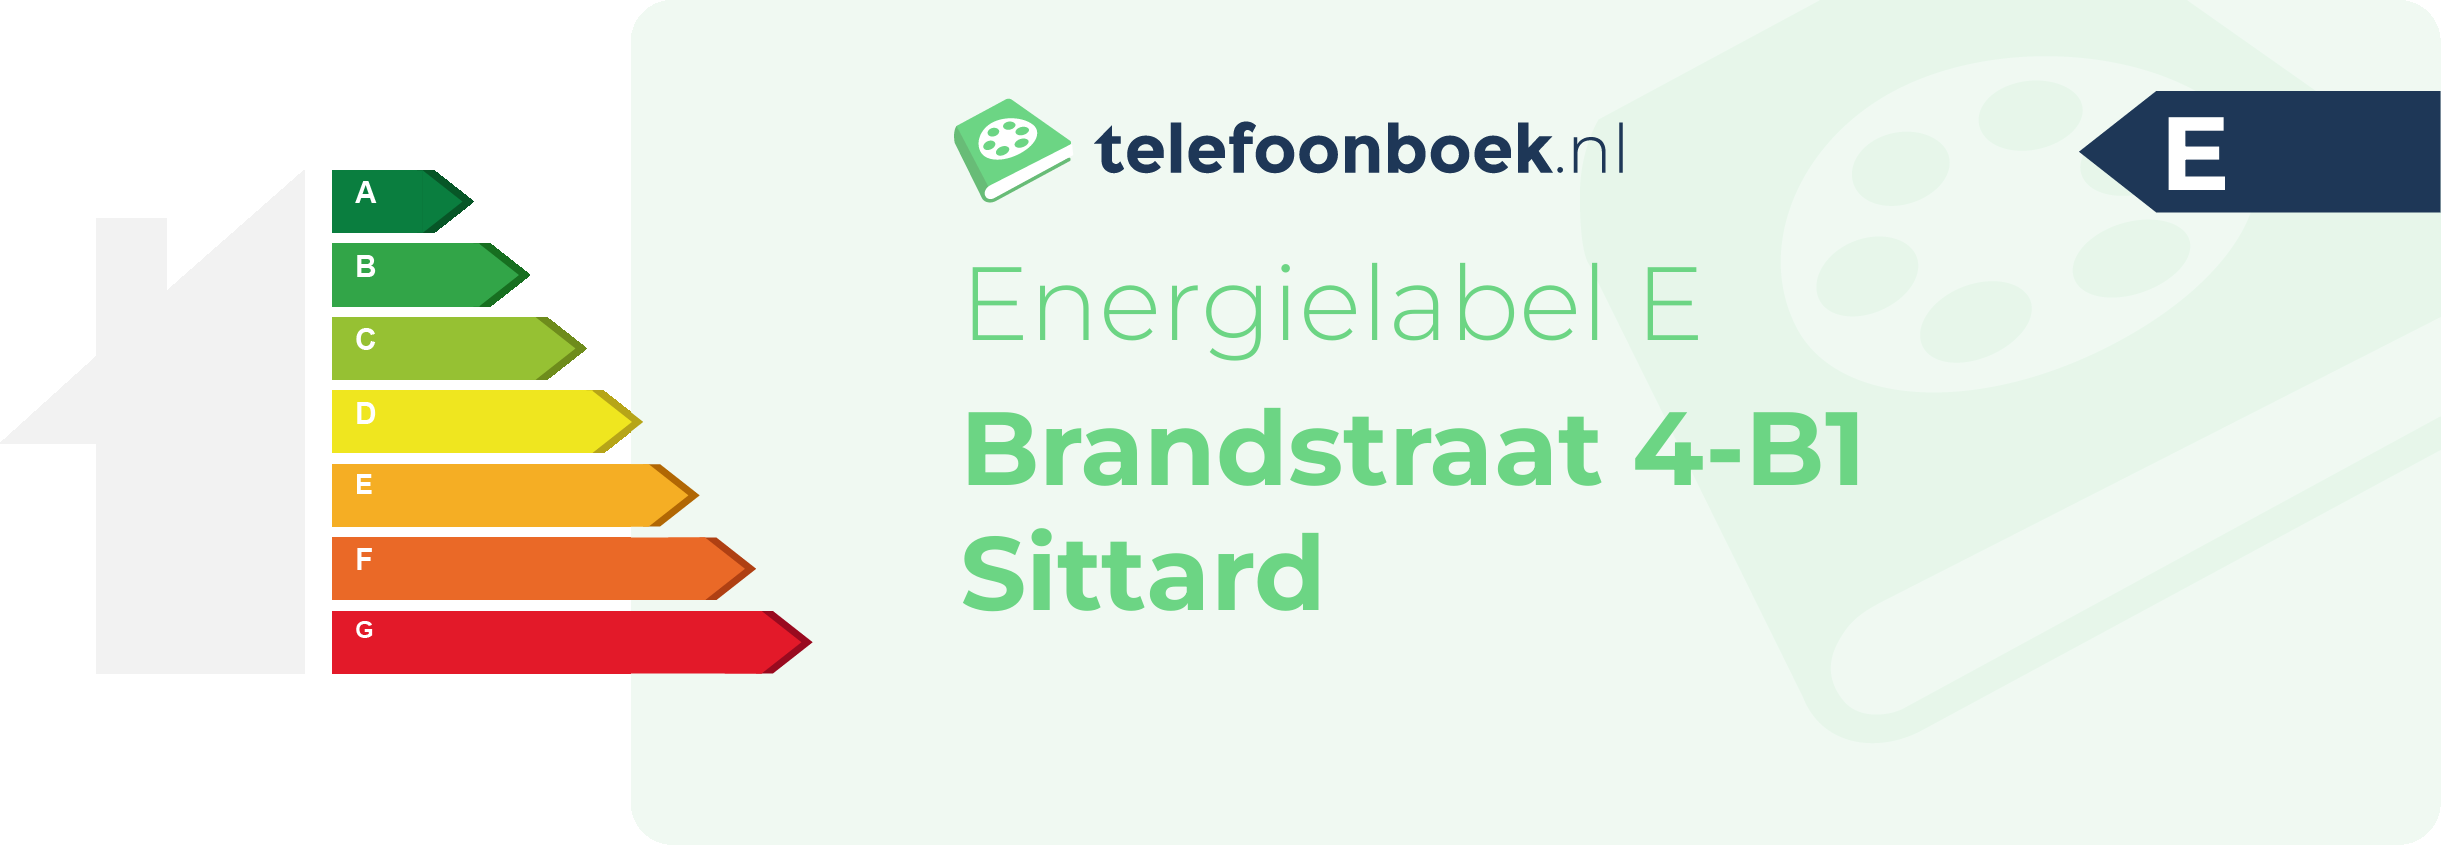 Energielabel Brandstraat 4-B1 Sittard